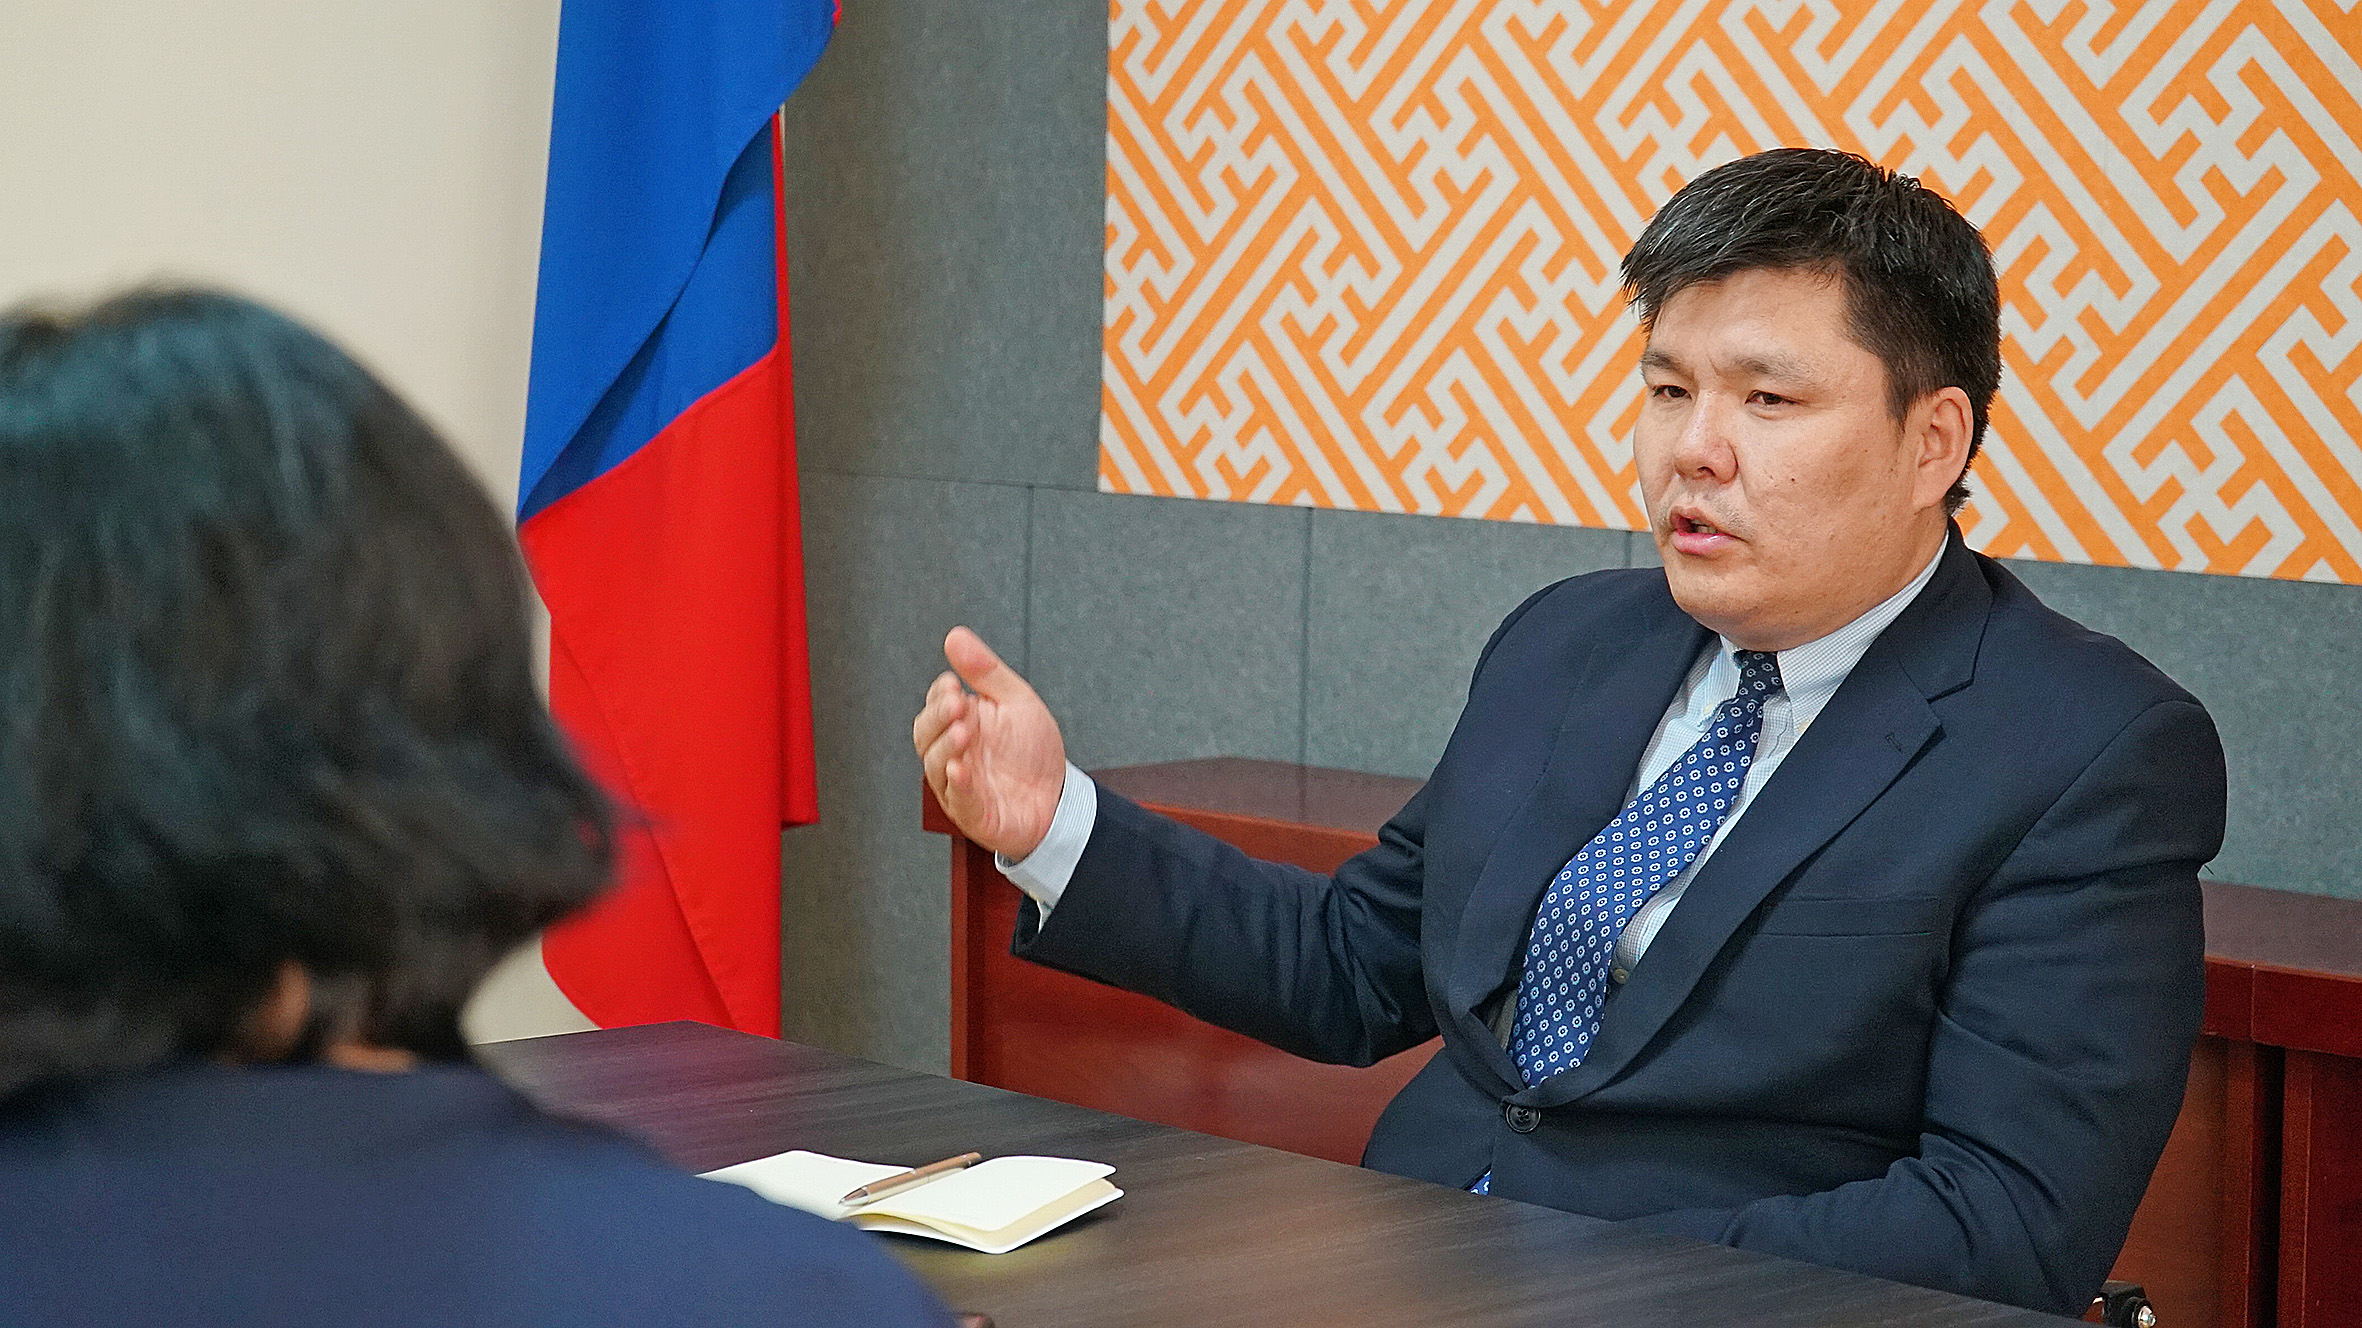 Б.Энхсүх: Монгол хүний оюуны бүтээлийг баталгаажуулах эрх зүйн орчныг шинэчилнэ